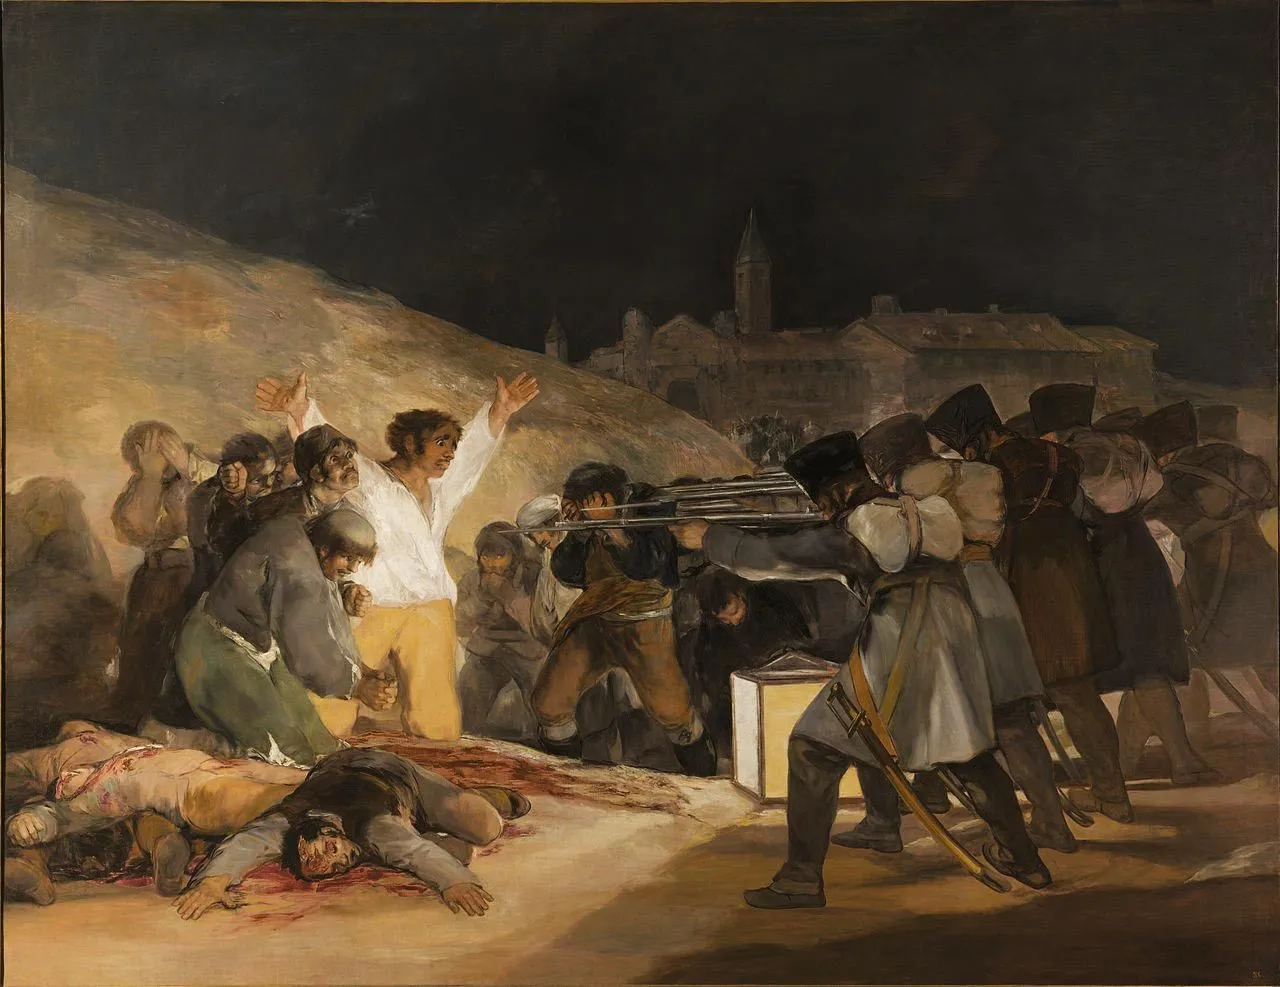 Francisco de Goya, Tres de Mayo, 1814, huile sur toile, 2,68 x 2,47 m (musée du Prado, Madrid).